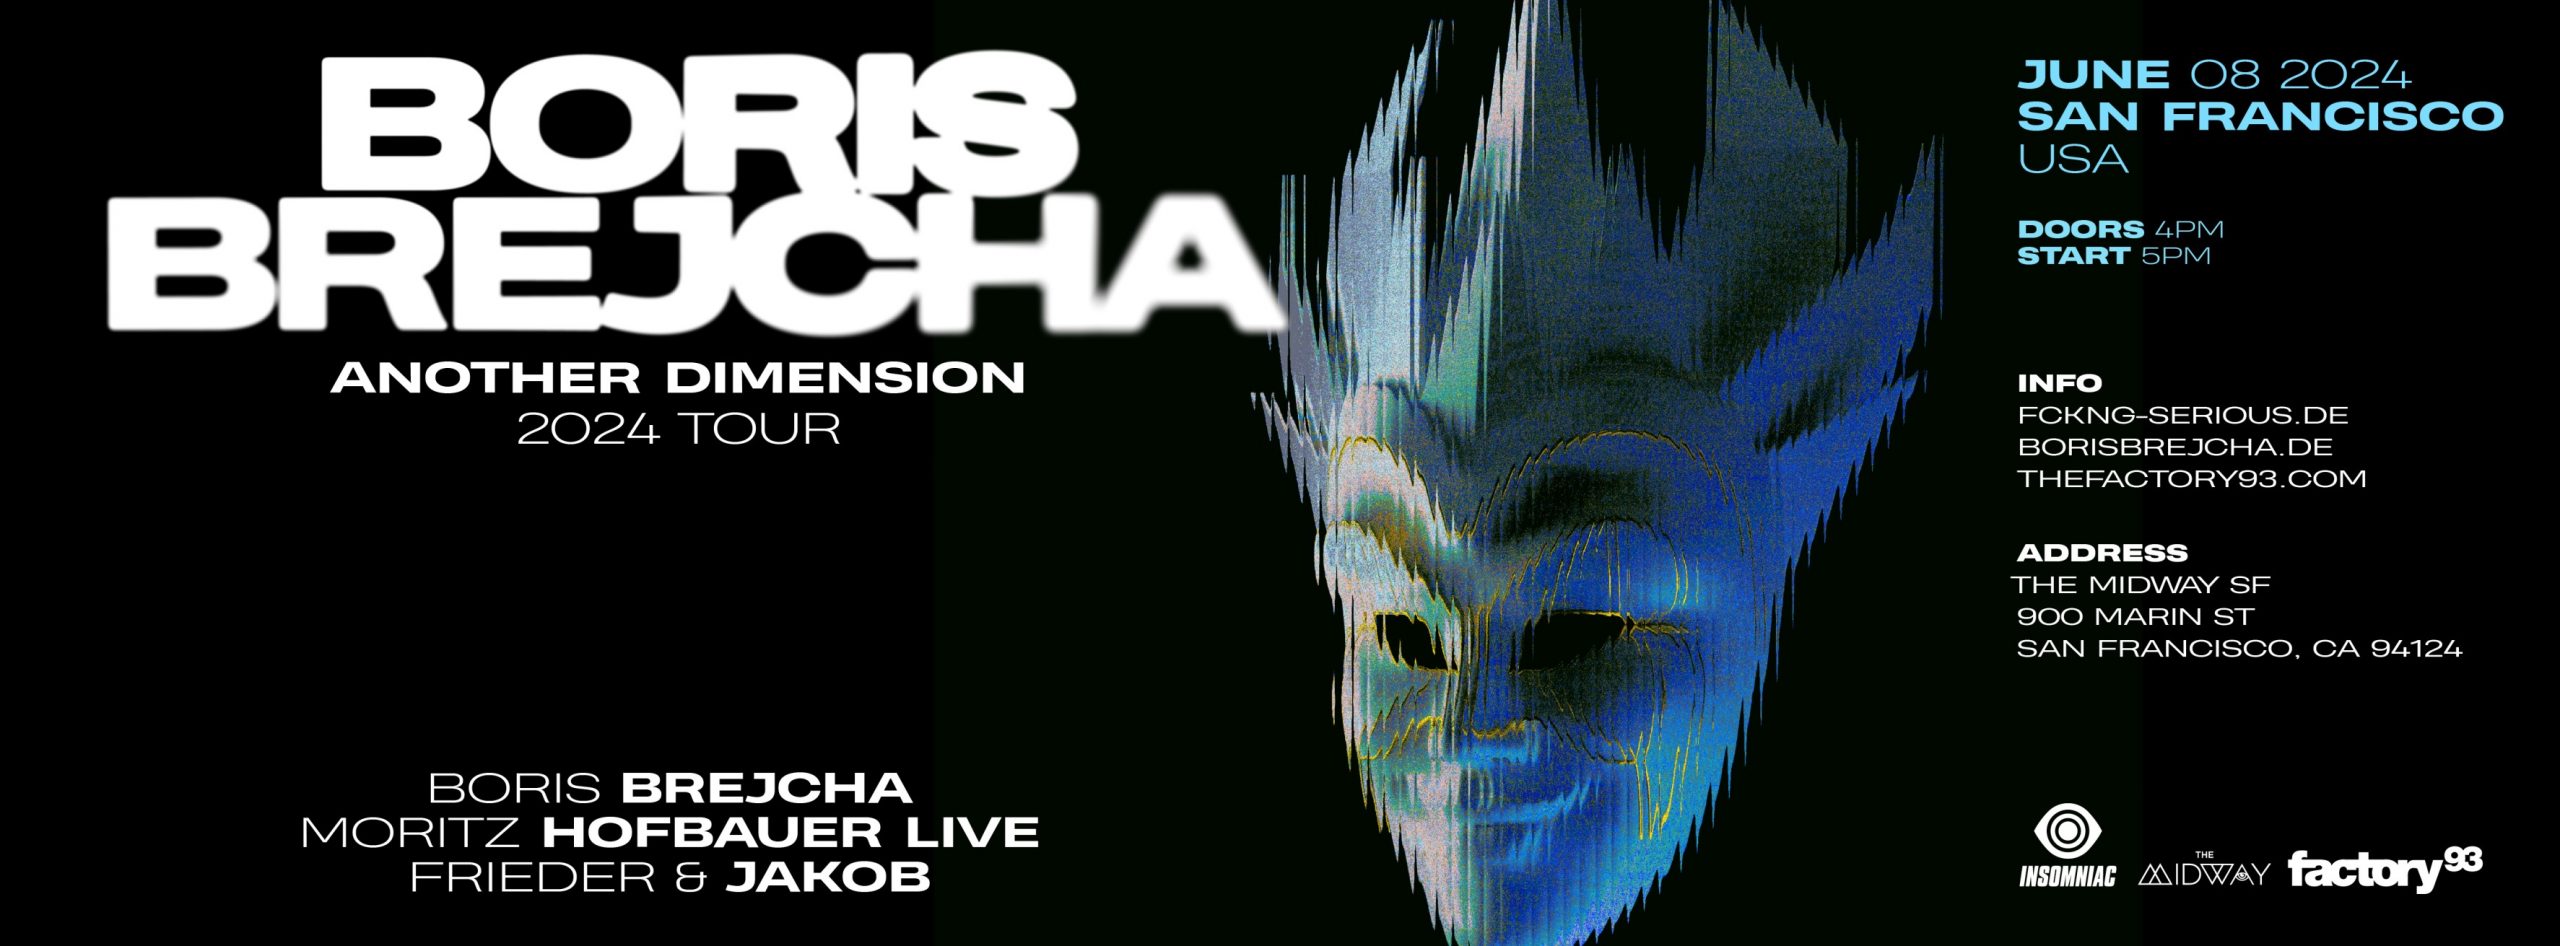 Boris Brejcha in SF – Another Dimension Tour 2024